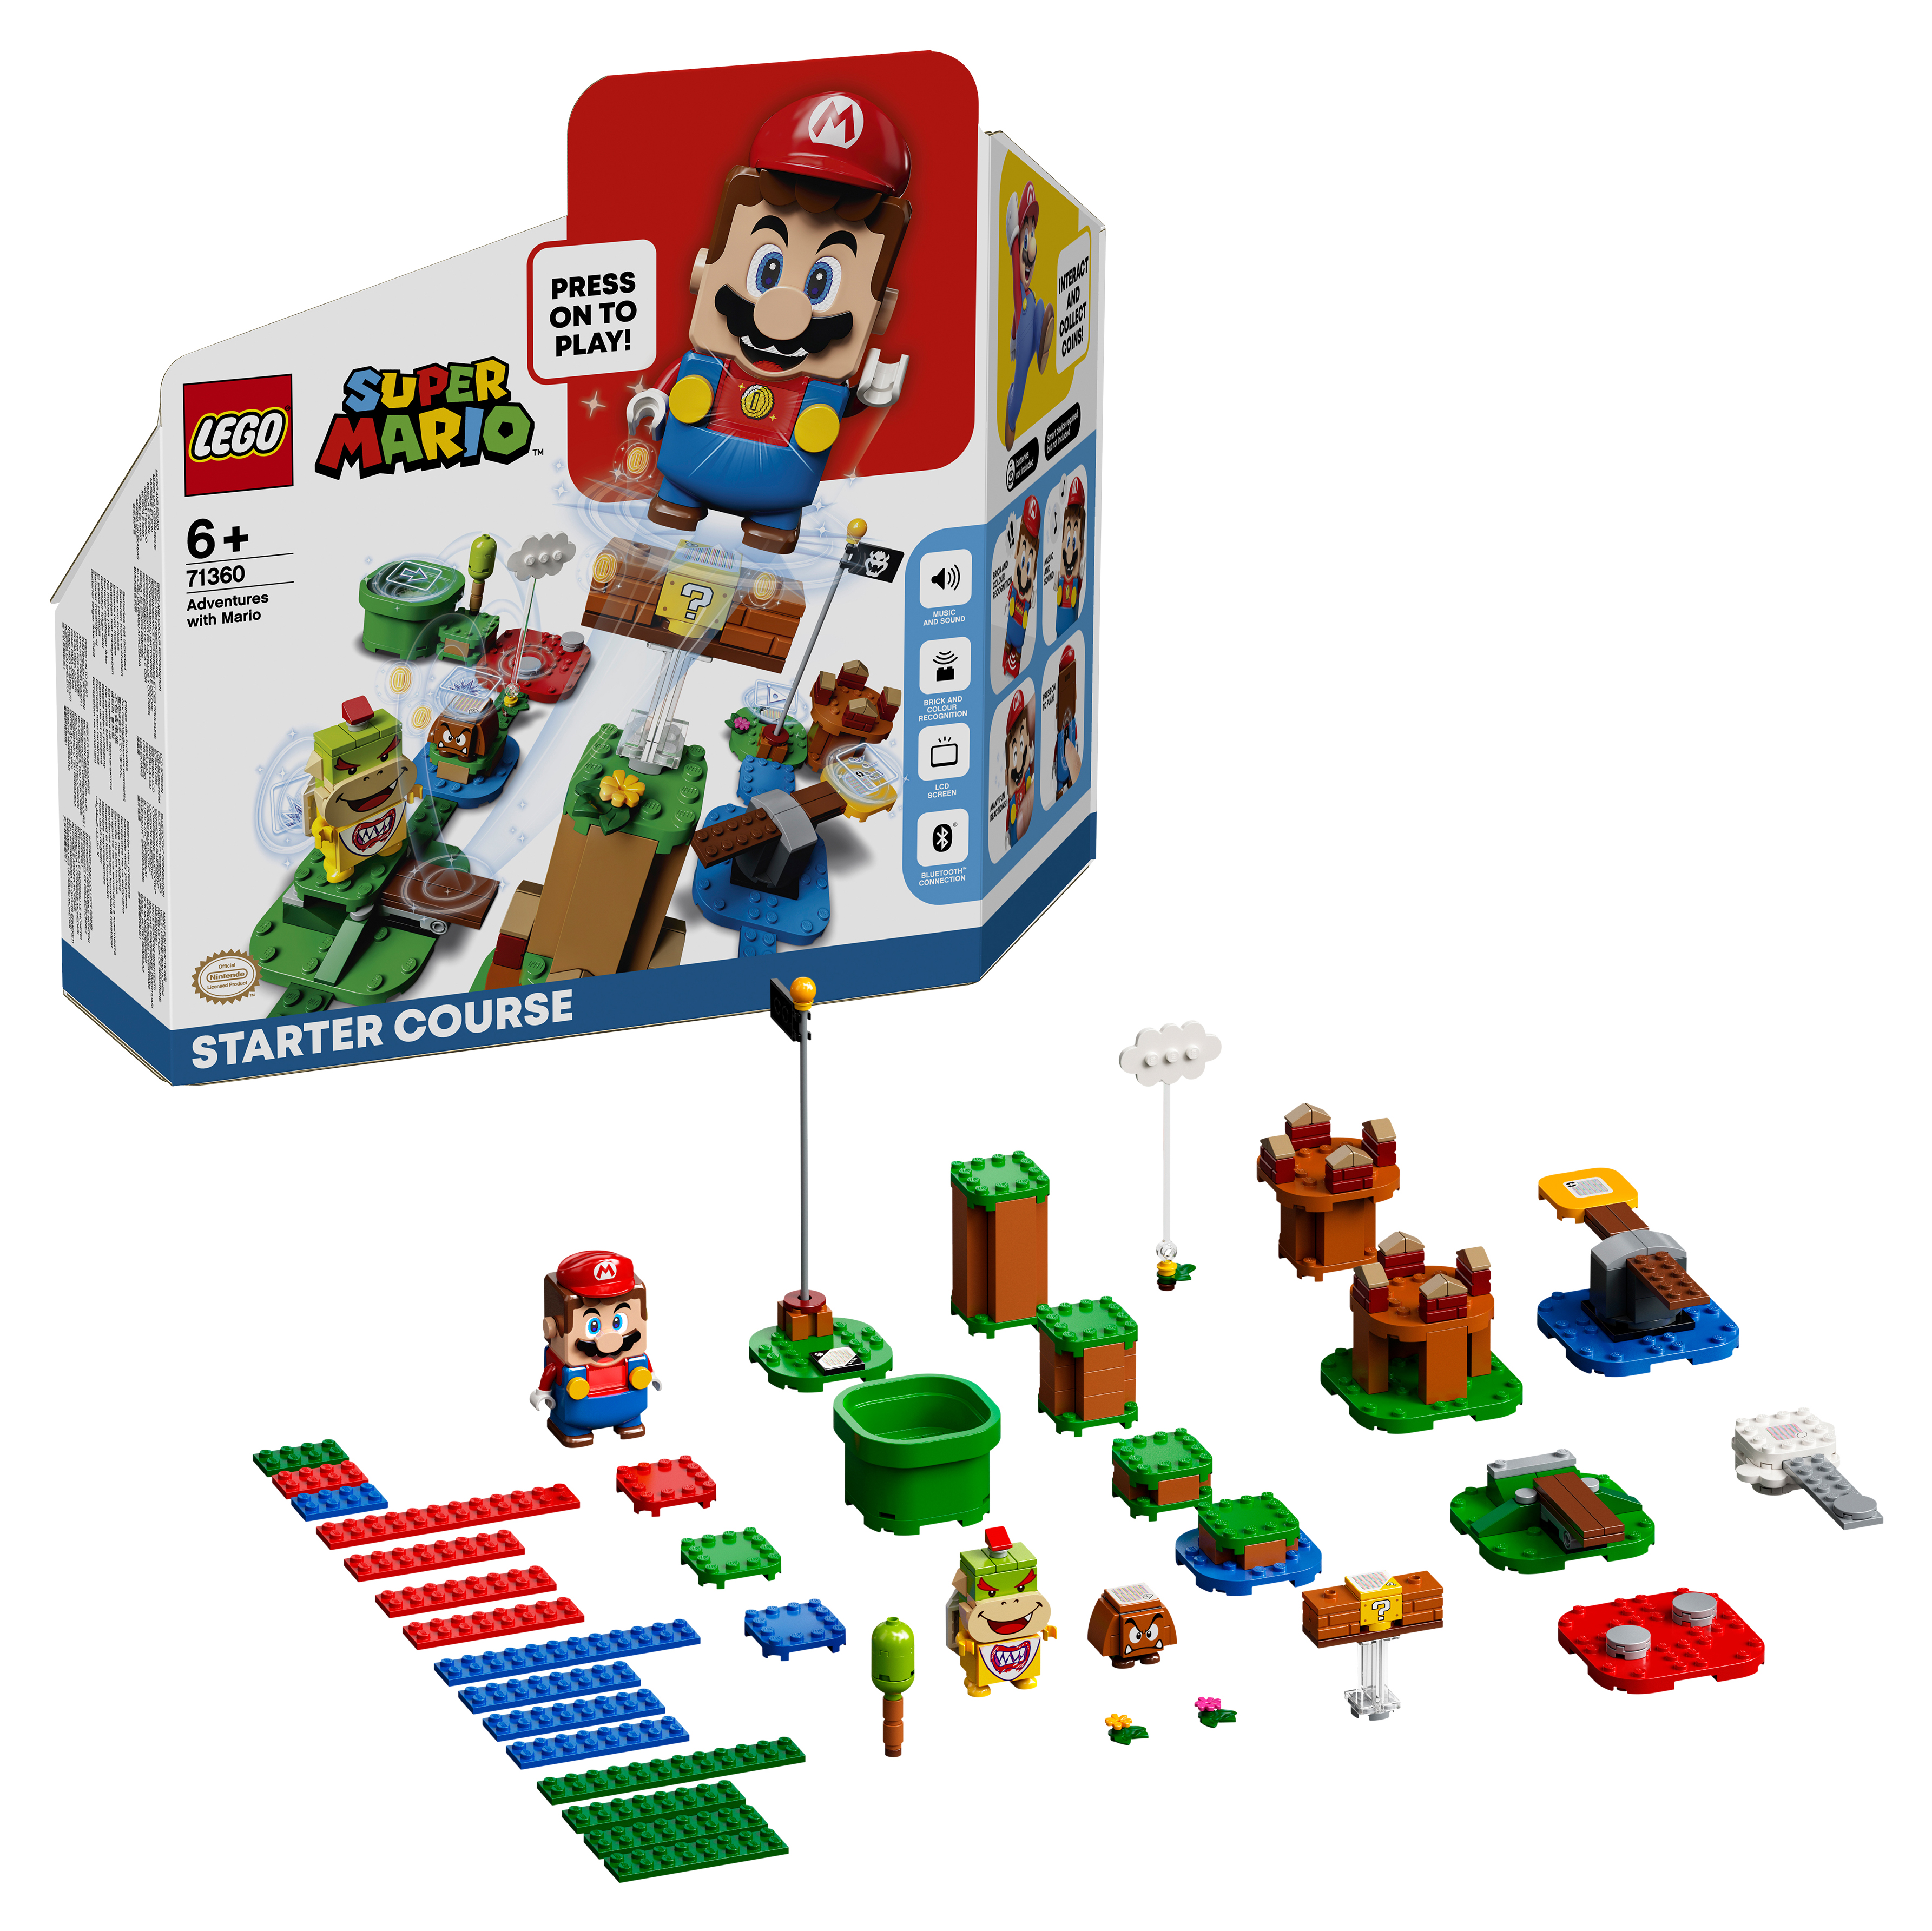 Конструктор LEGO Super Mario Приключения вместе с Марио Стартовый набор, 231 деталь, 71360 конструктор lego 71366 super mario boomer bill barrage expansion set